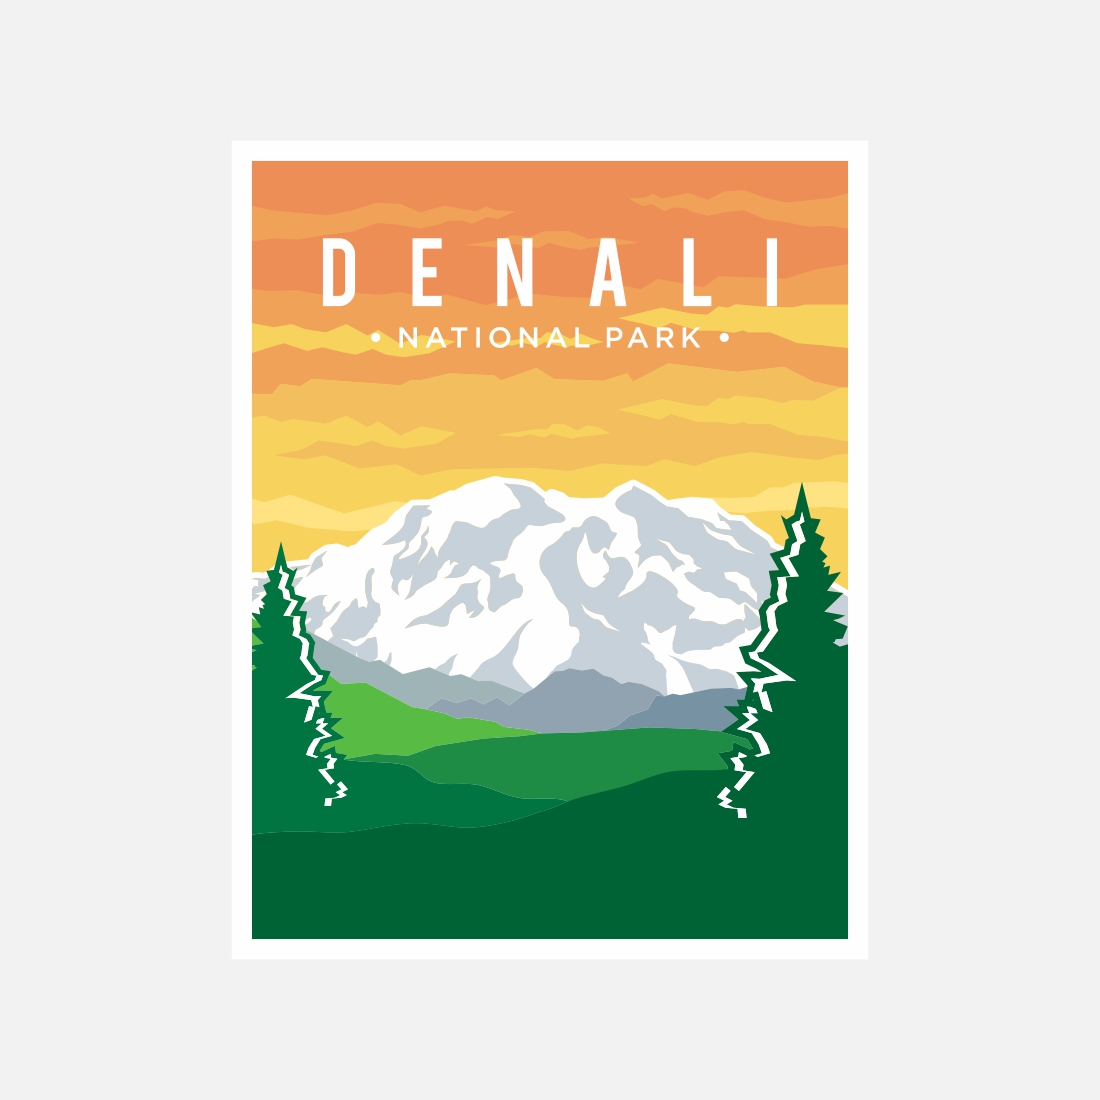 Denali National Park poster vector illustration design – Only $8 cover image.